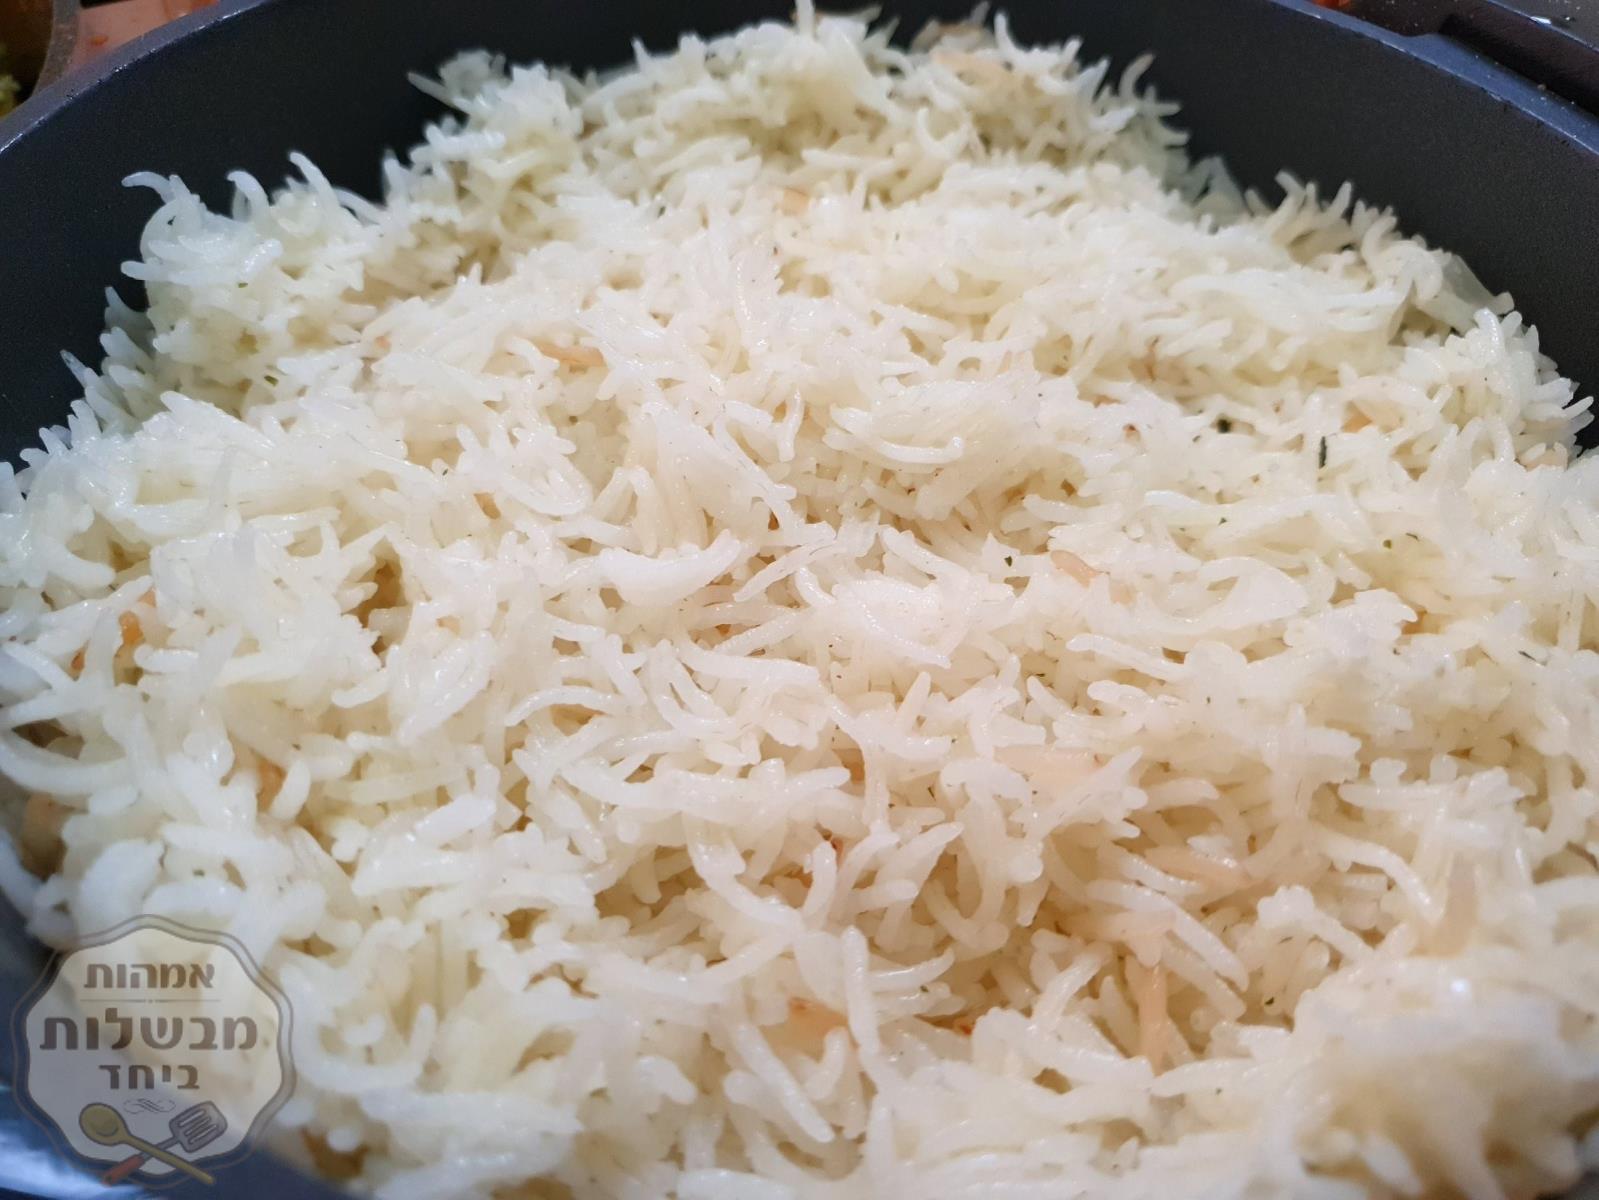 אורז בסמטי משגע- אחד אחד😋